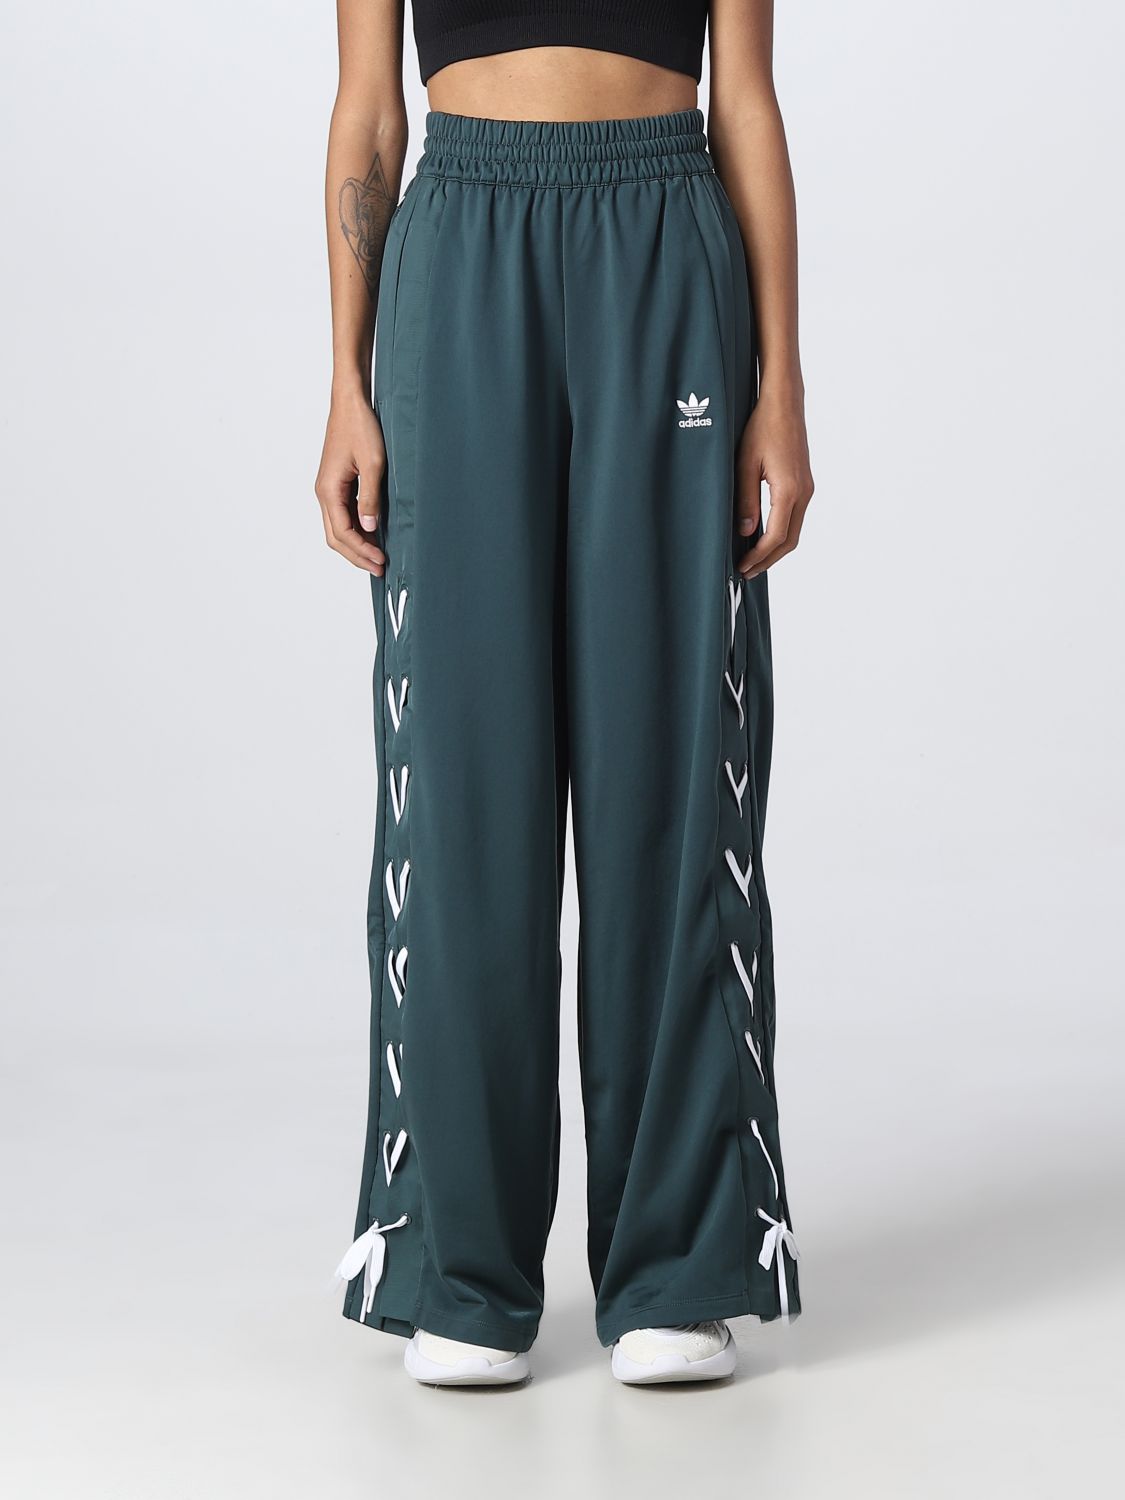 ADIDAS ORIGINALS: Pantalón para Verde PantalÓN Adidas Originals HK5086 en en GIGLIO.COM